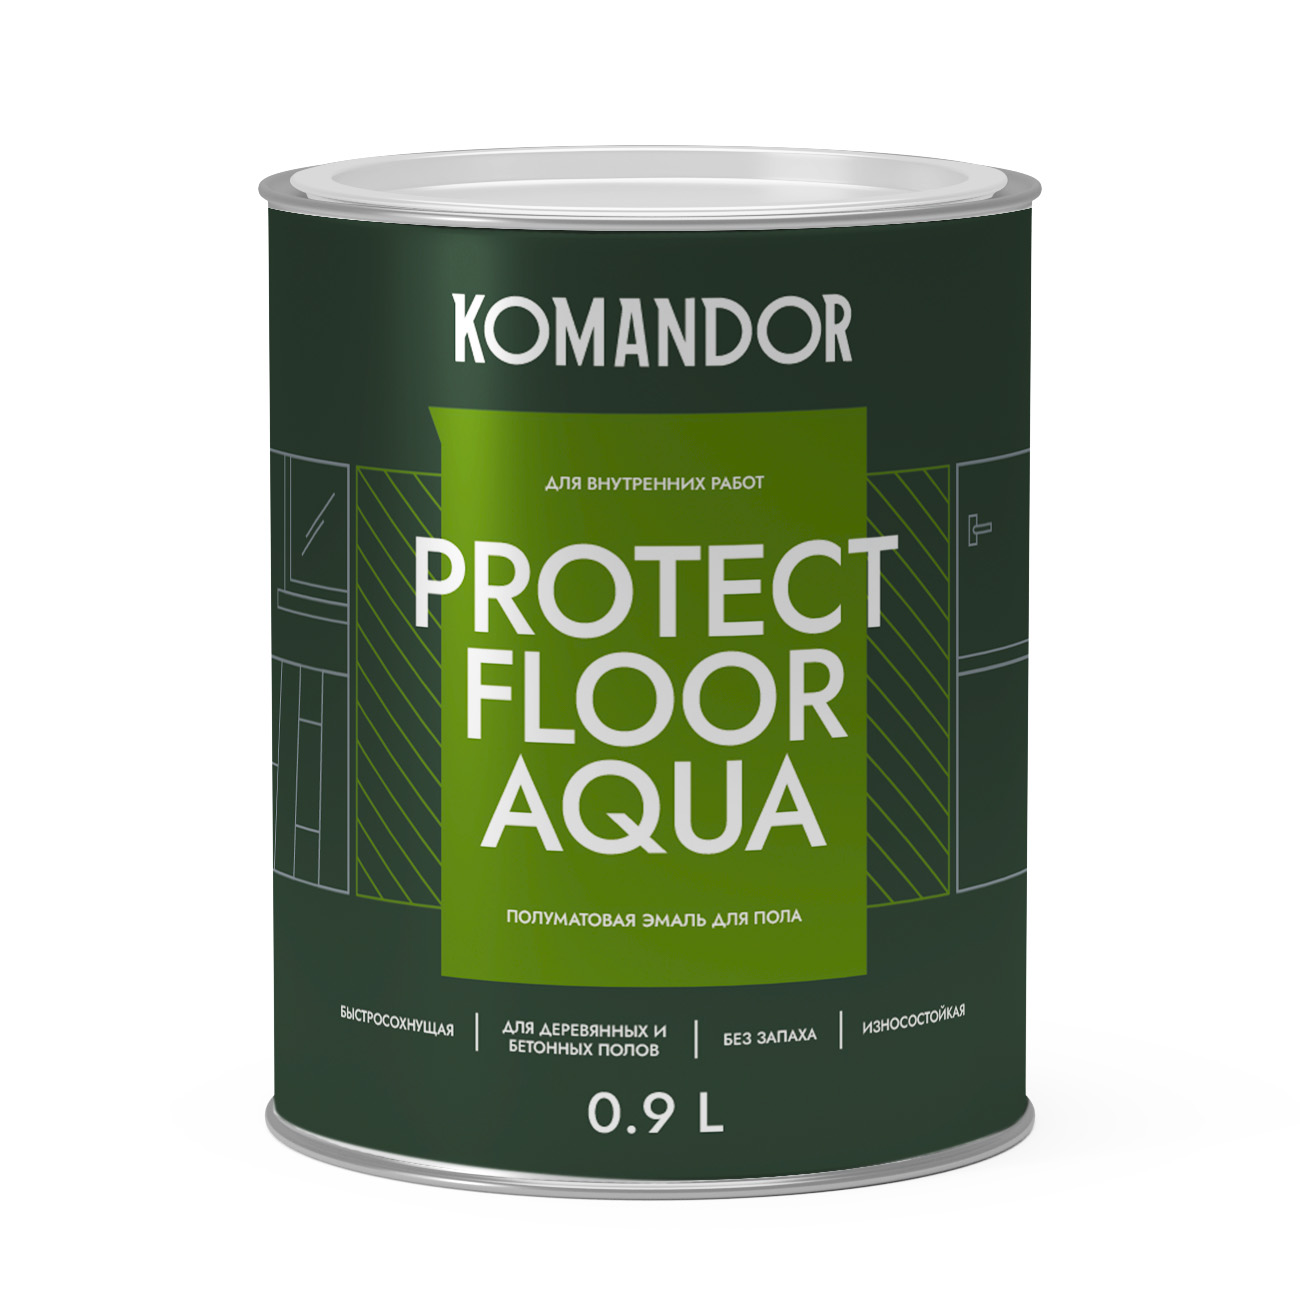 Эмаль для пола и лестниц Komandor Protect Floor Aqua C S1314003001 полуматовая 0,9 л - фото 1